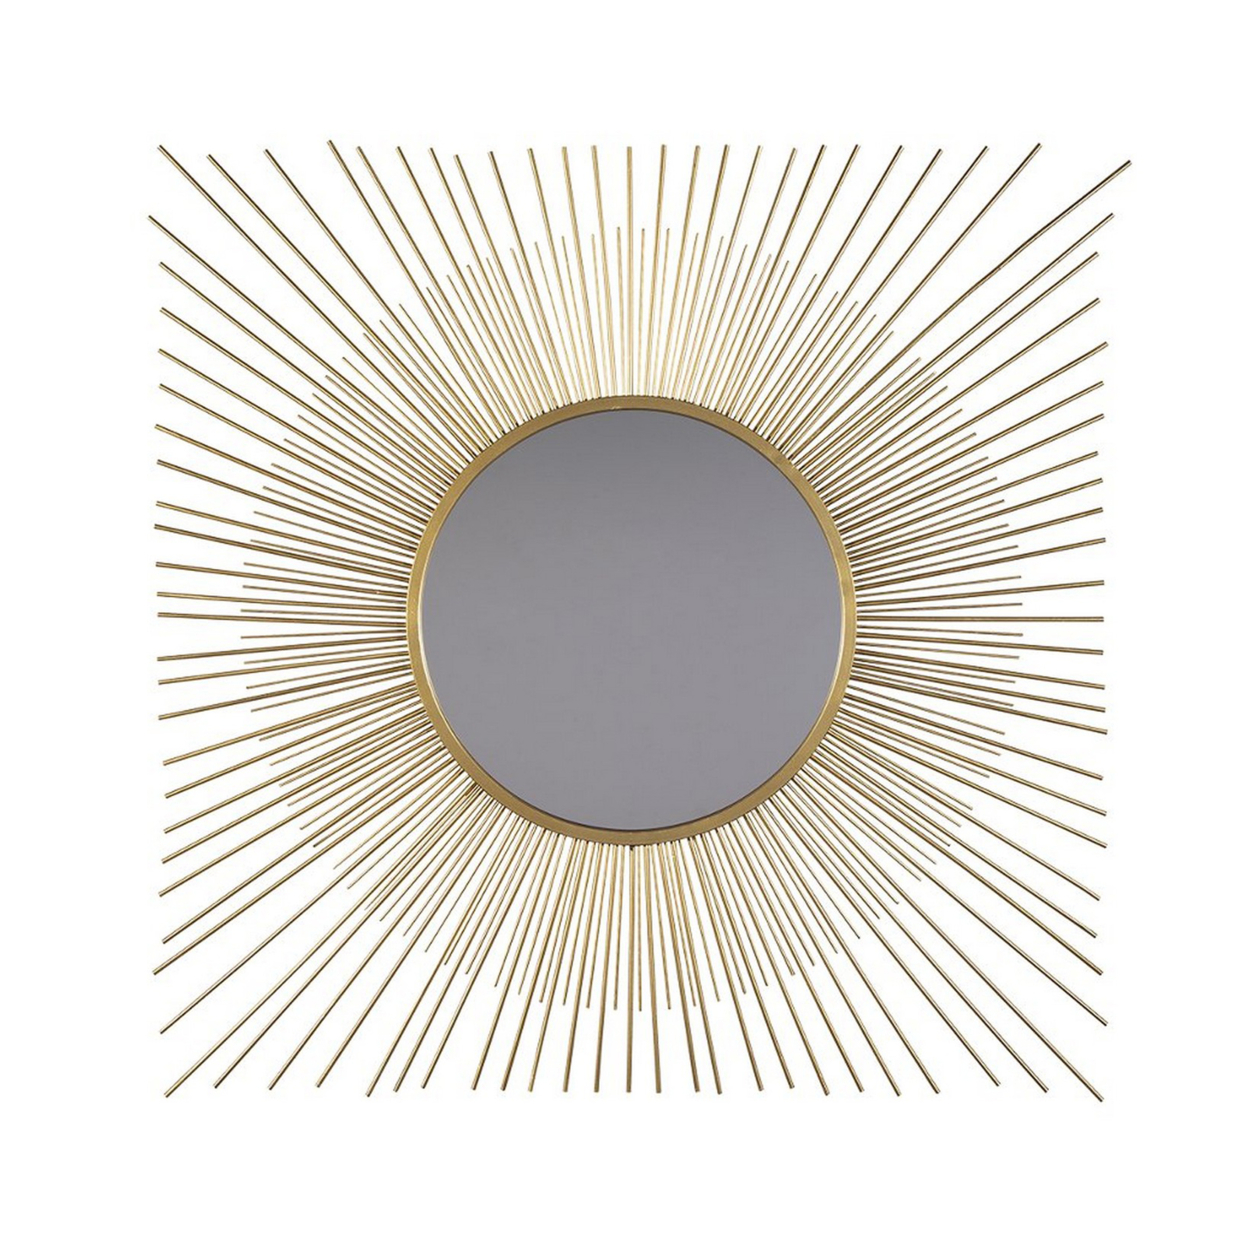 Round Accent Mirror With Sunburst Design, Gold And Silver- Saltoro Sherpi